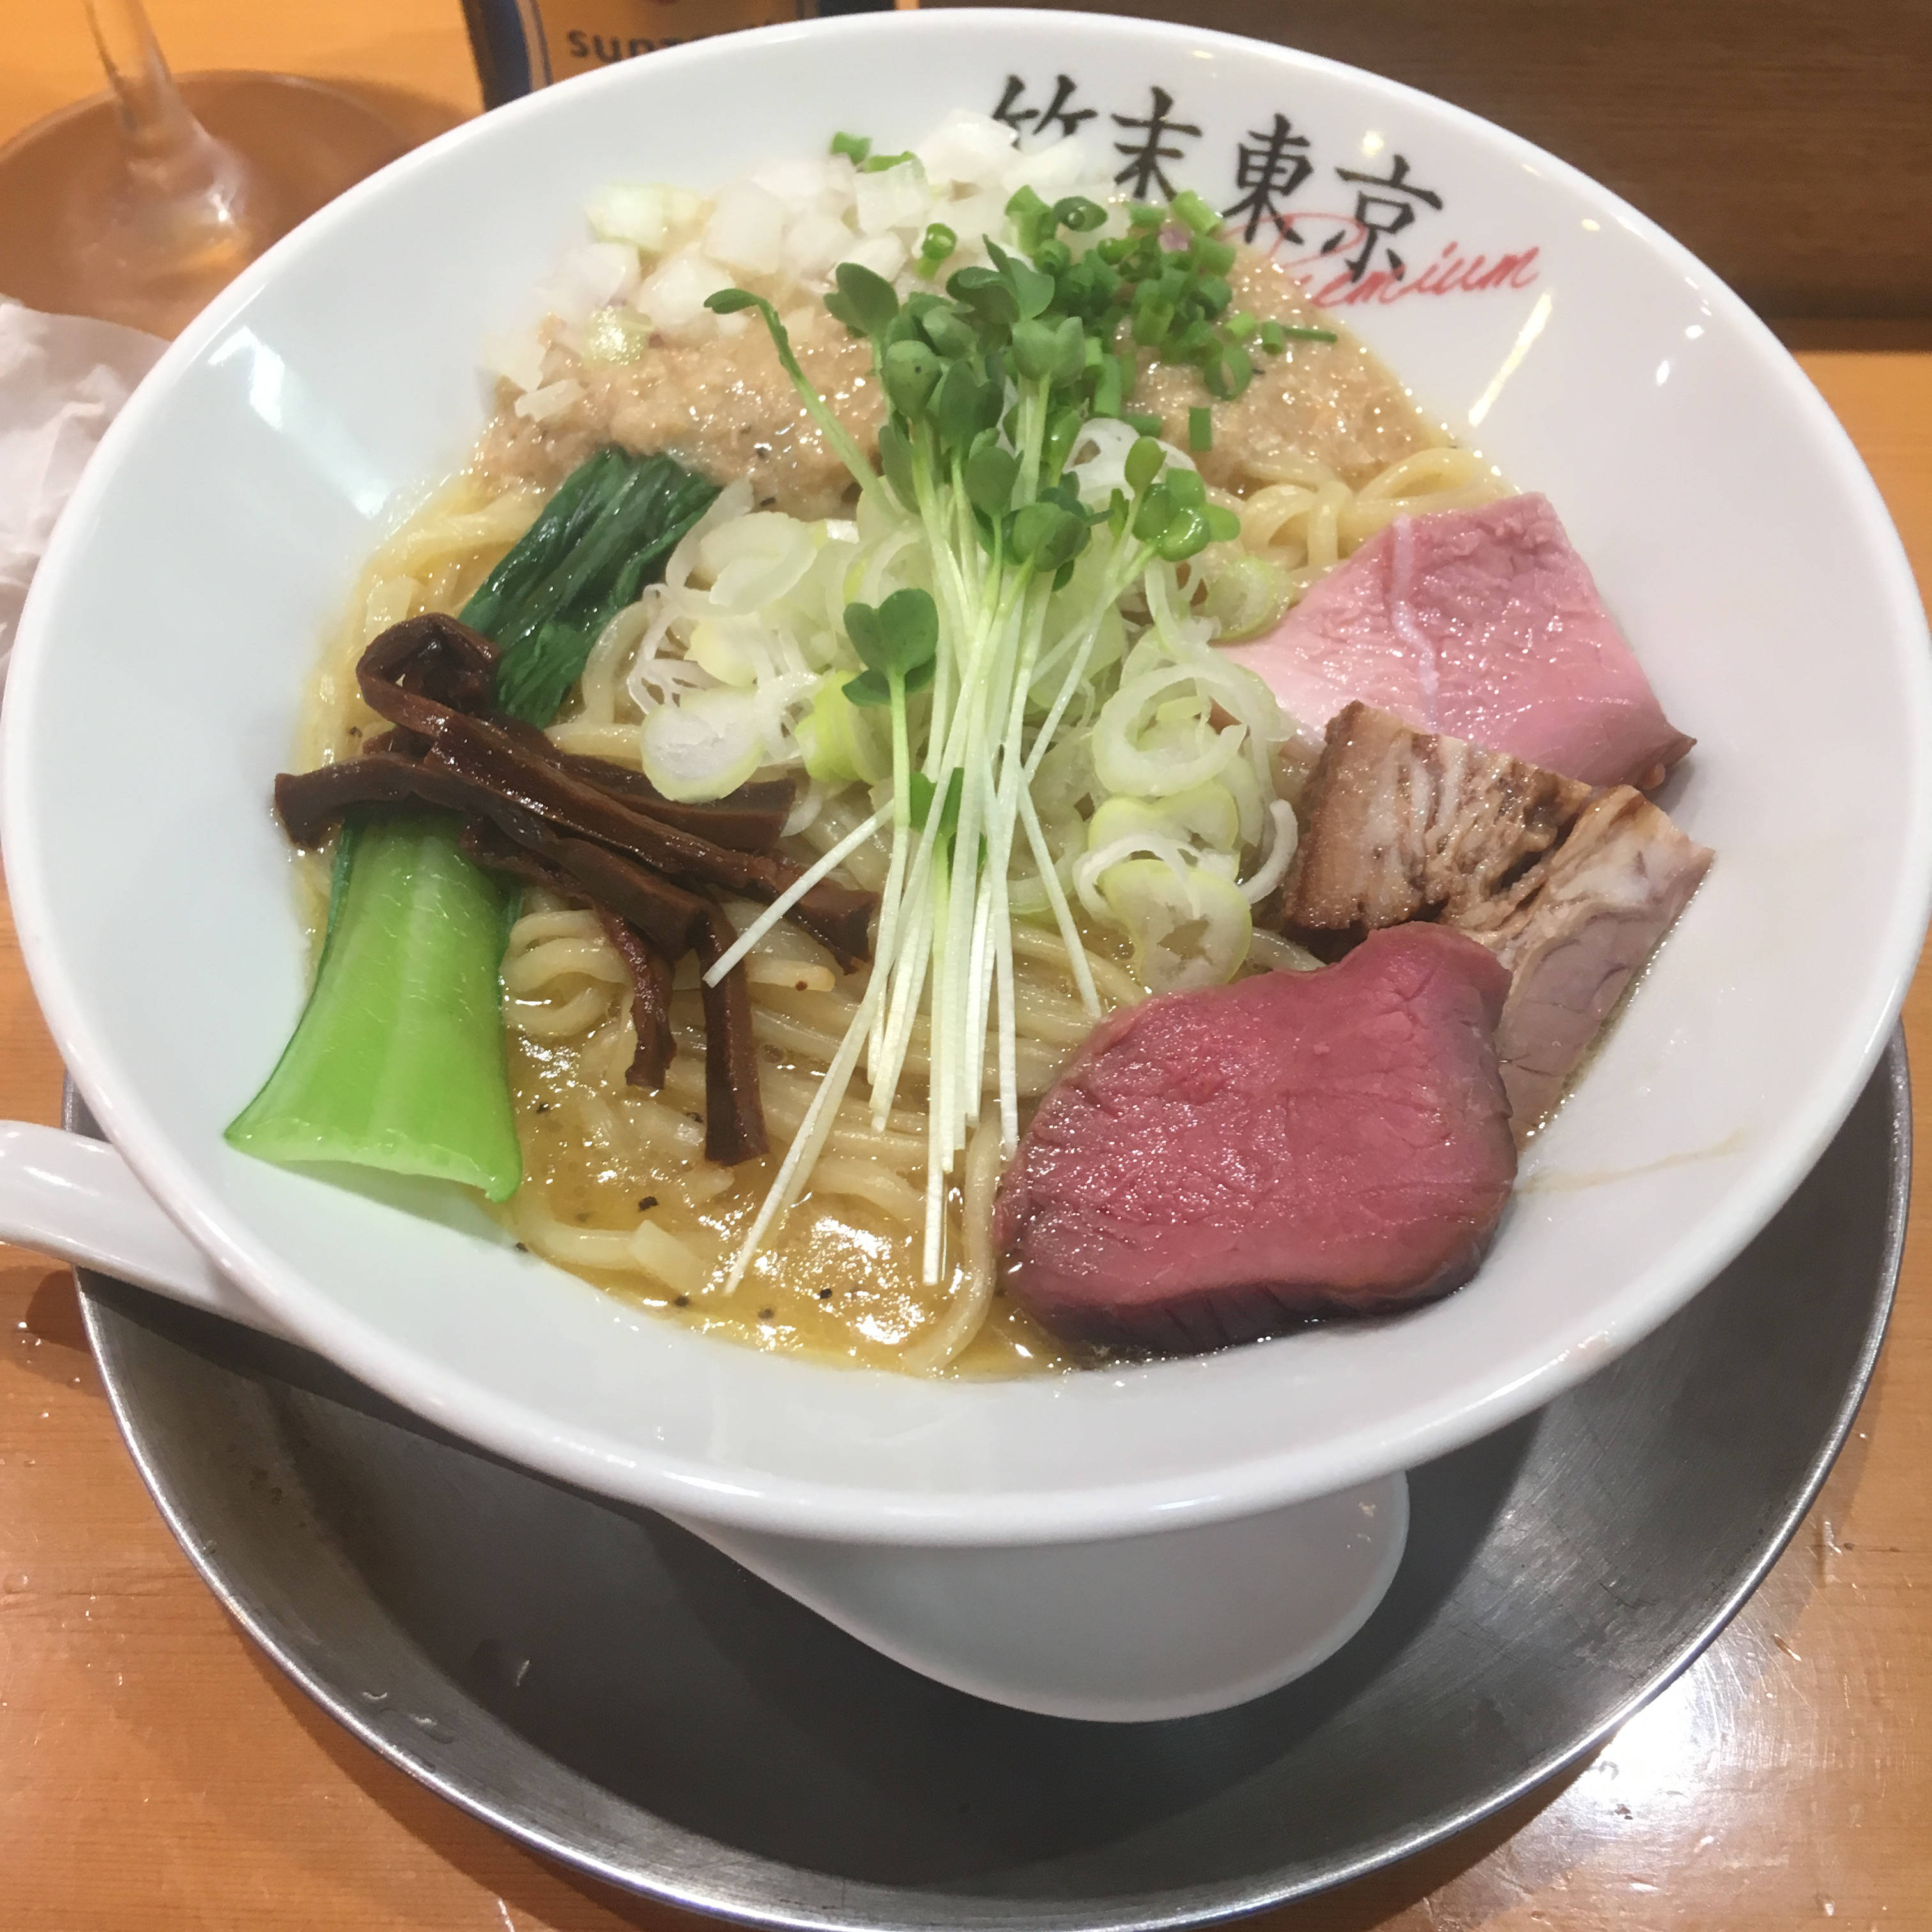 竹末東京Premium 鶏ホタテそば2018年10月6日に食べた分。